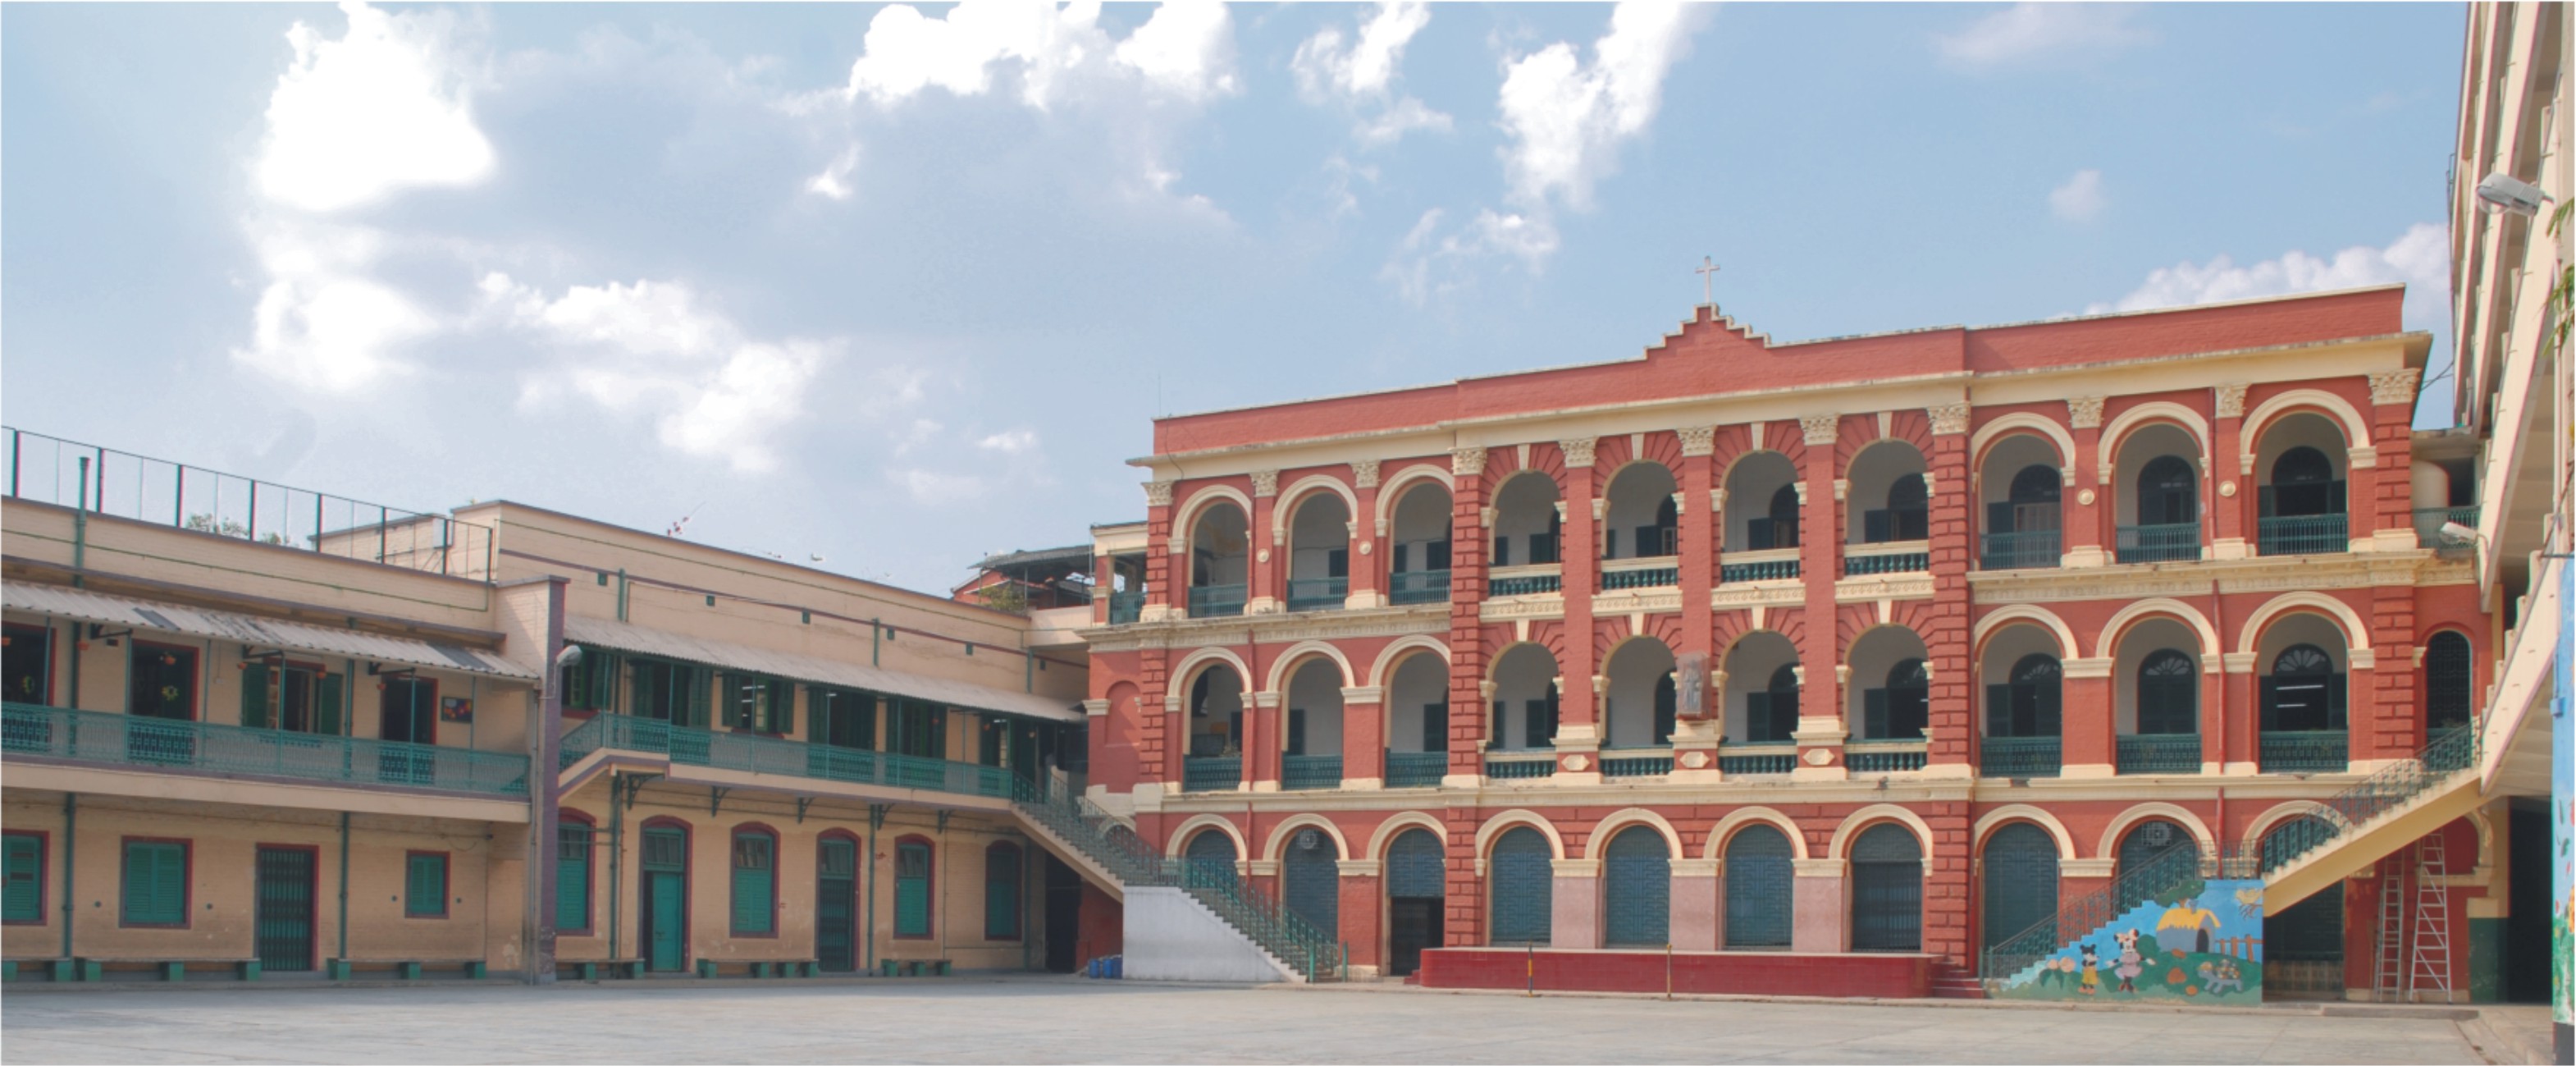 St. Joseph's College, Kolkata